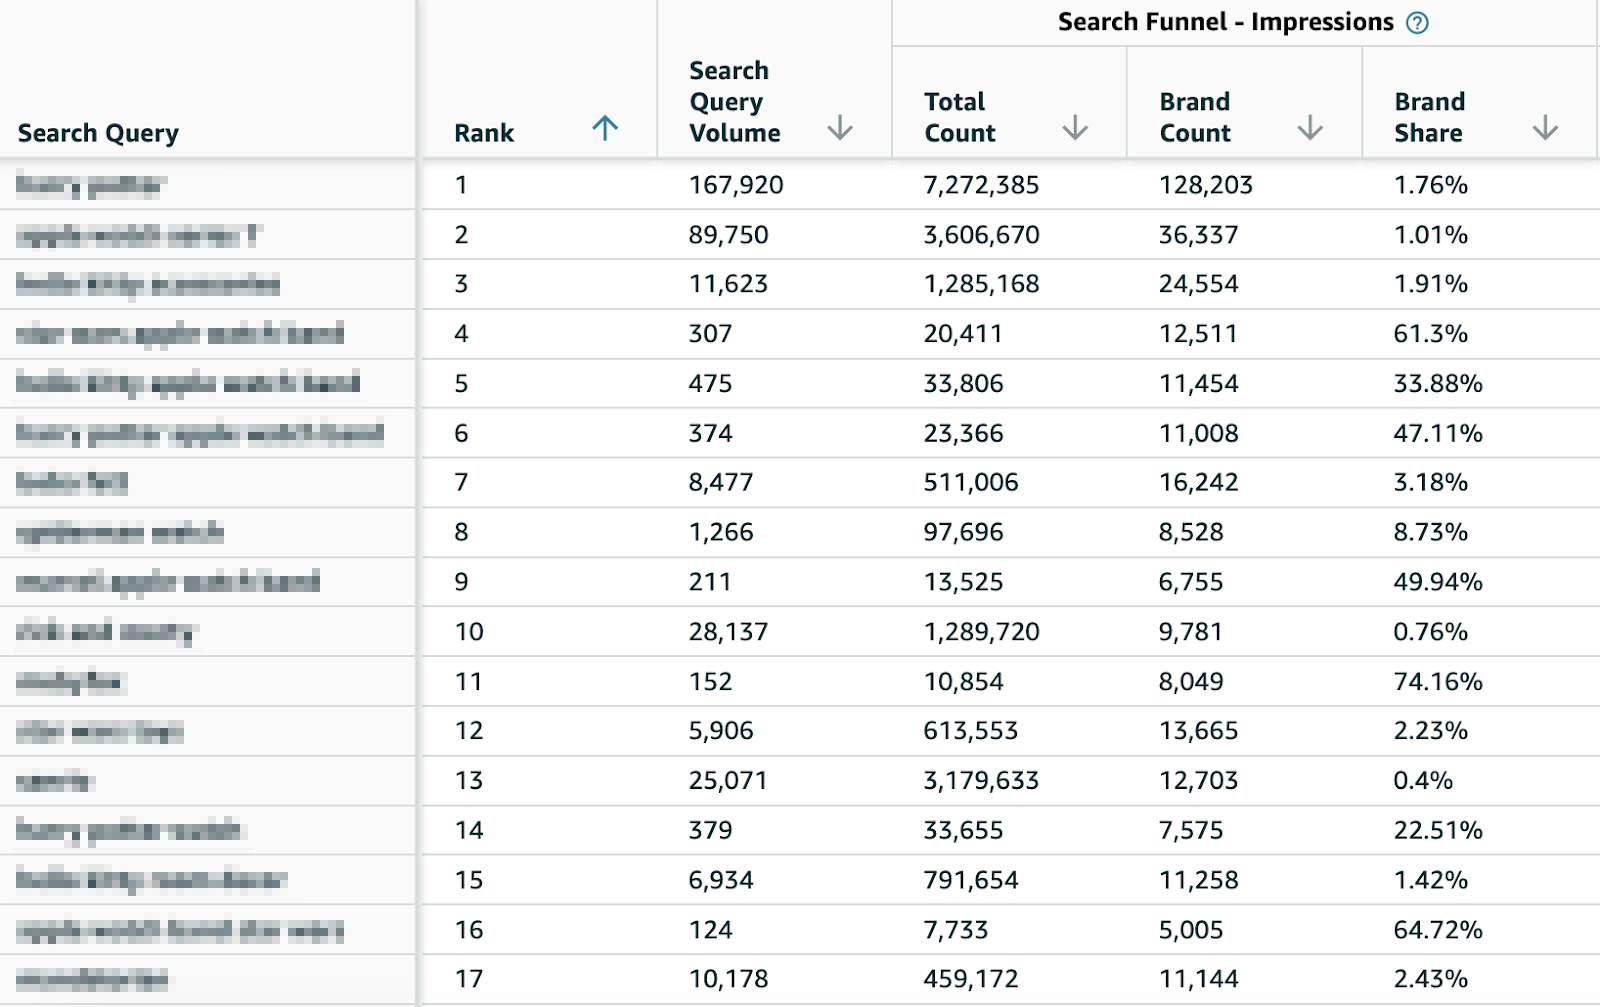 Search Funnel - Impressions Data